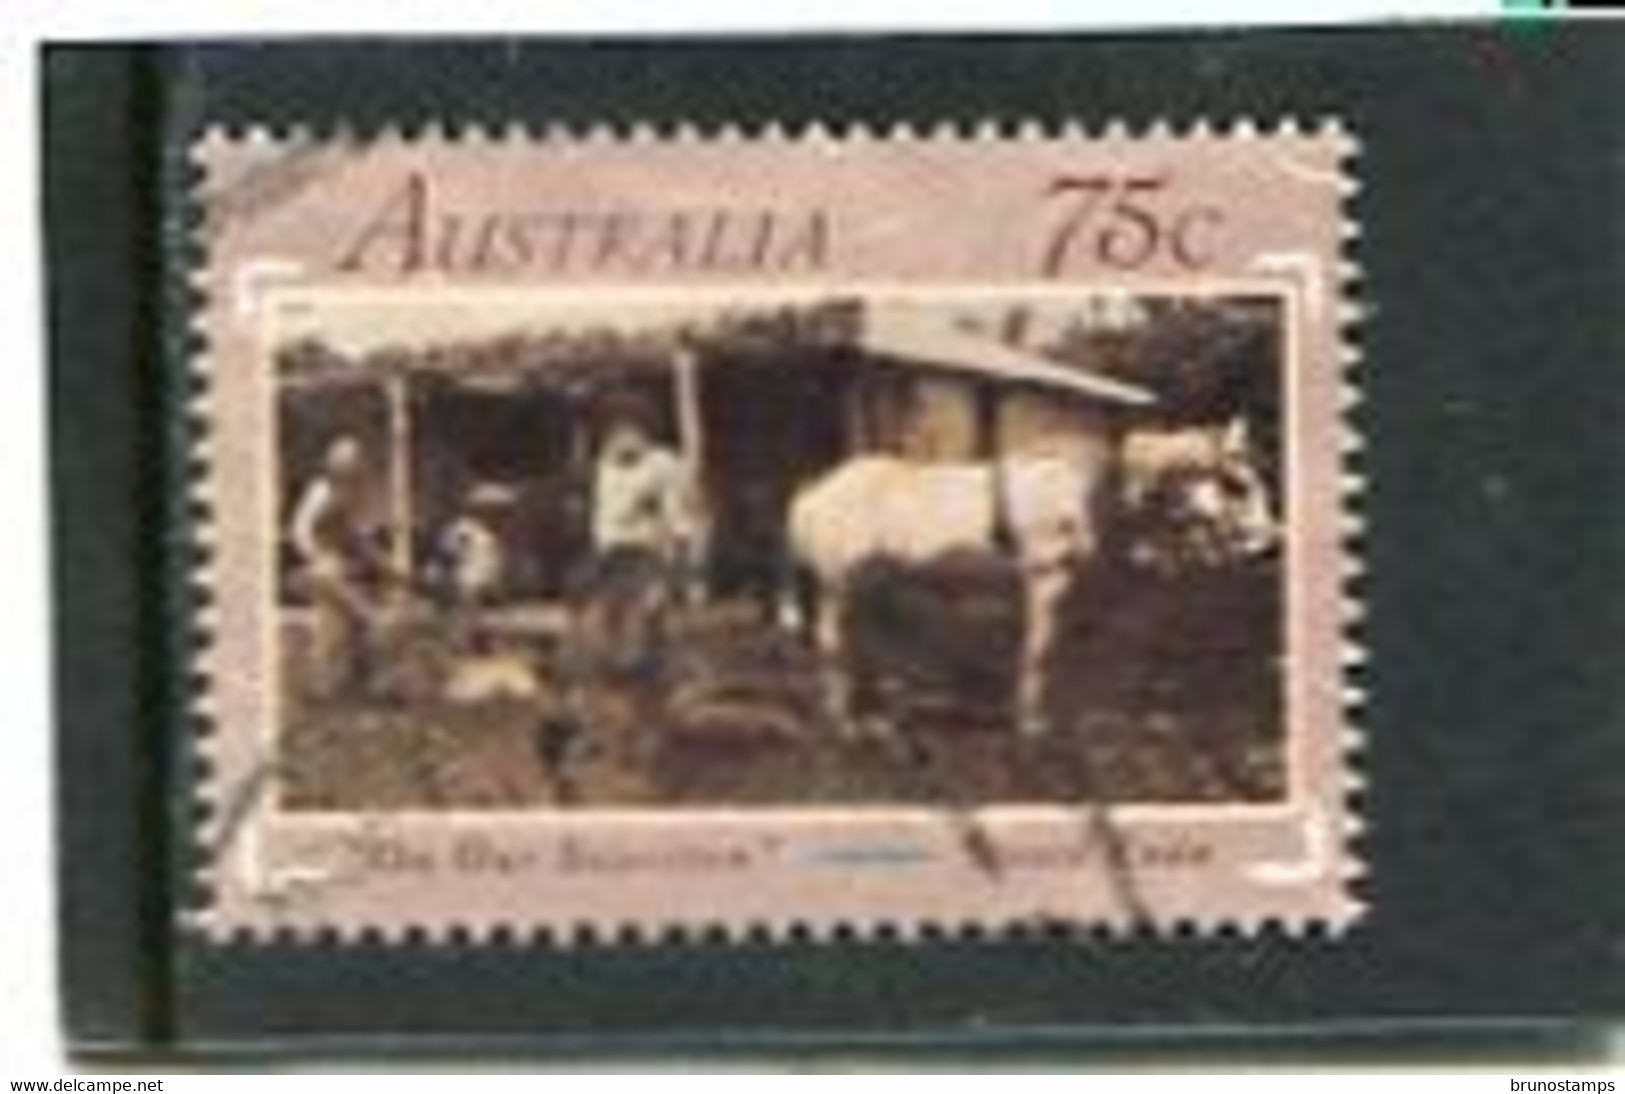 AUSTRALIA - 1991  75c  AUSTRALIAN WRITERS  FINE USED - Used Stamps